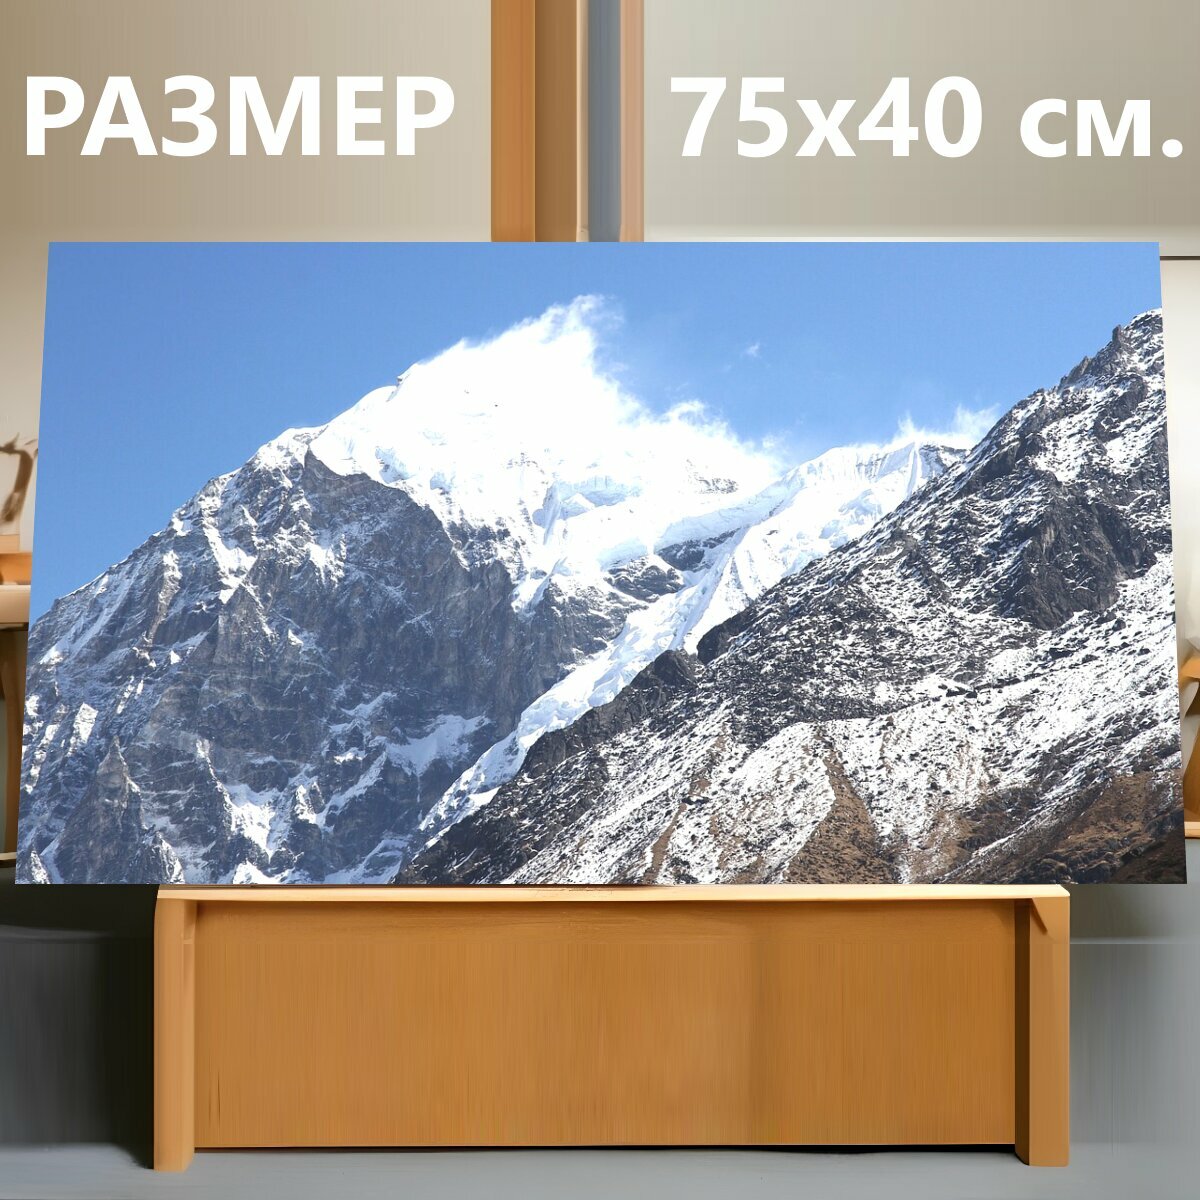 Картина на холсте "Гора, снег, горный пик" на подрамнике 75х40 см. для интерьера